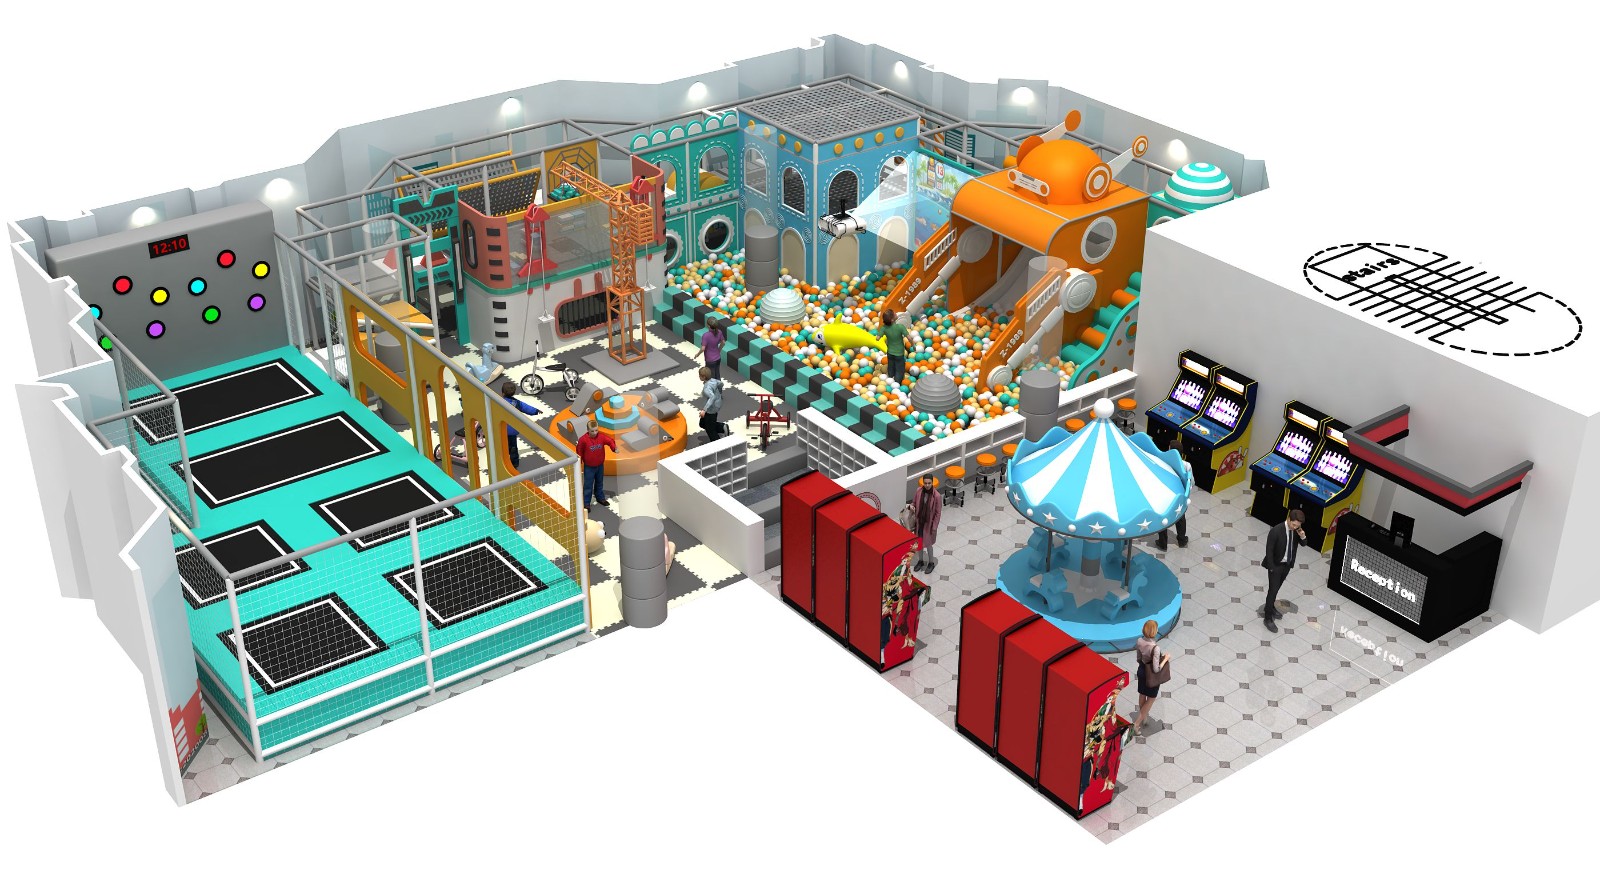 Robot-themed family entertainment center for children